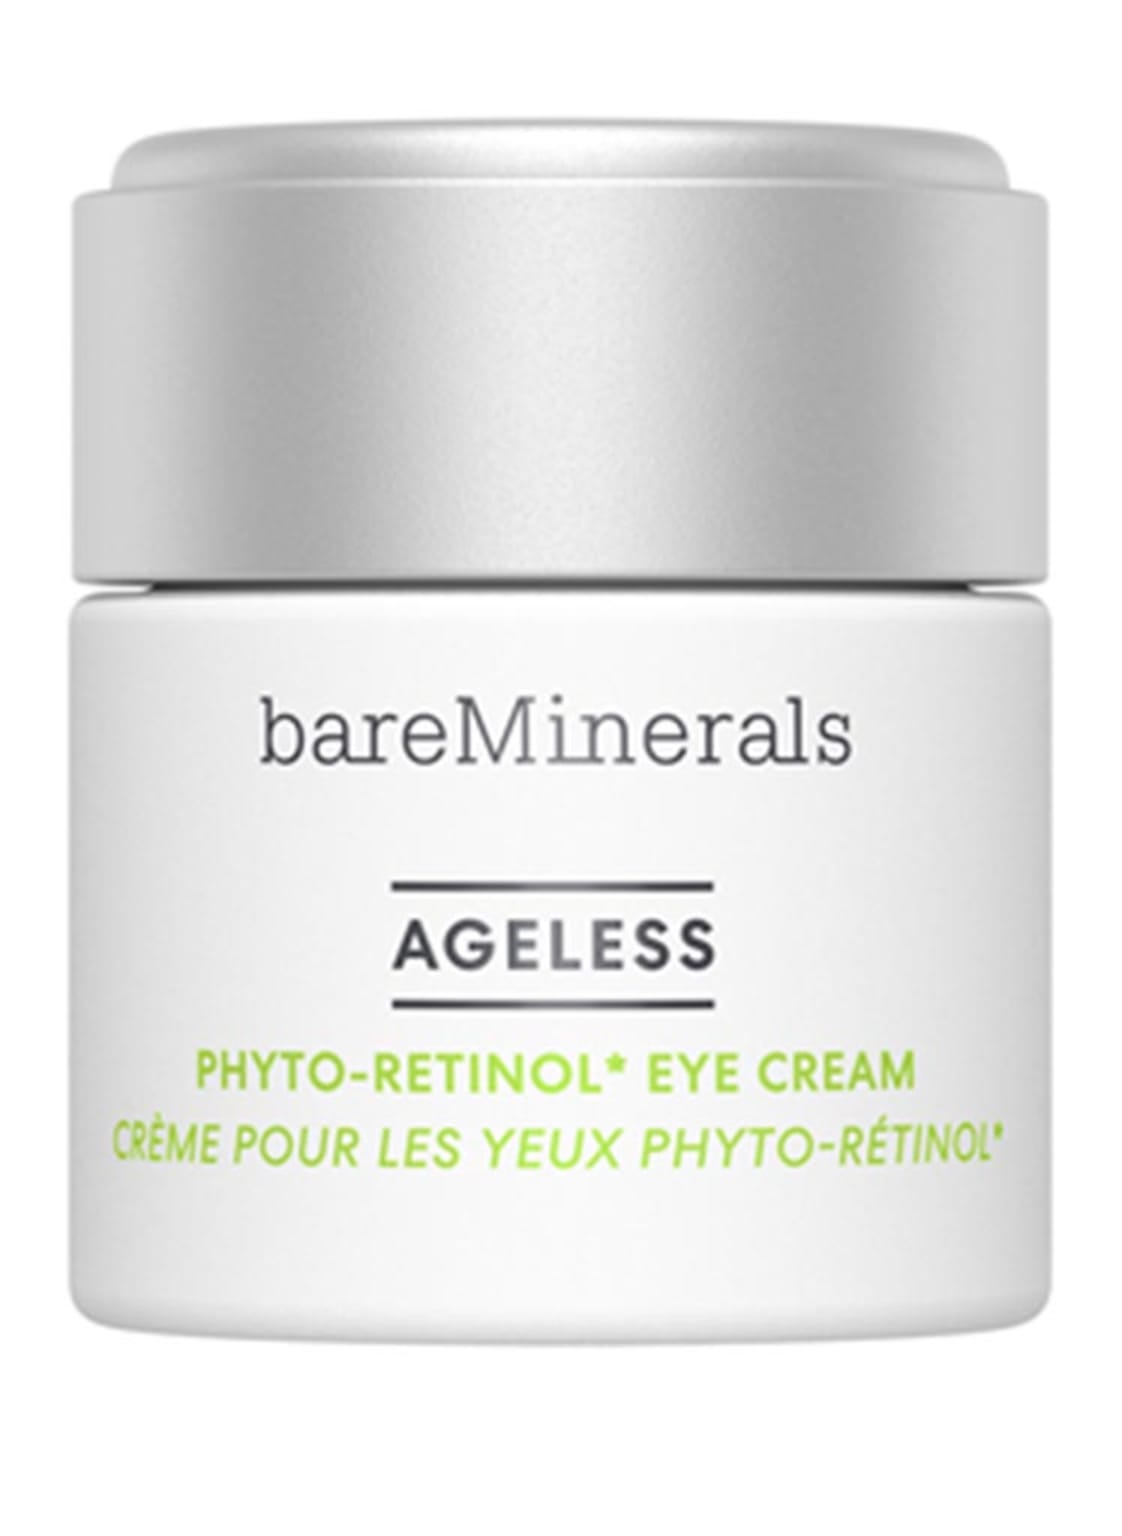 Bareminerals Ageless Phyto-Retinol Eye Cream 15 g von bareMinerals